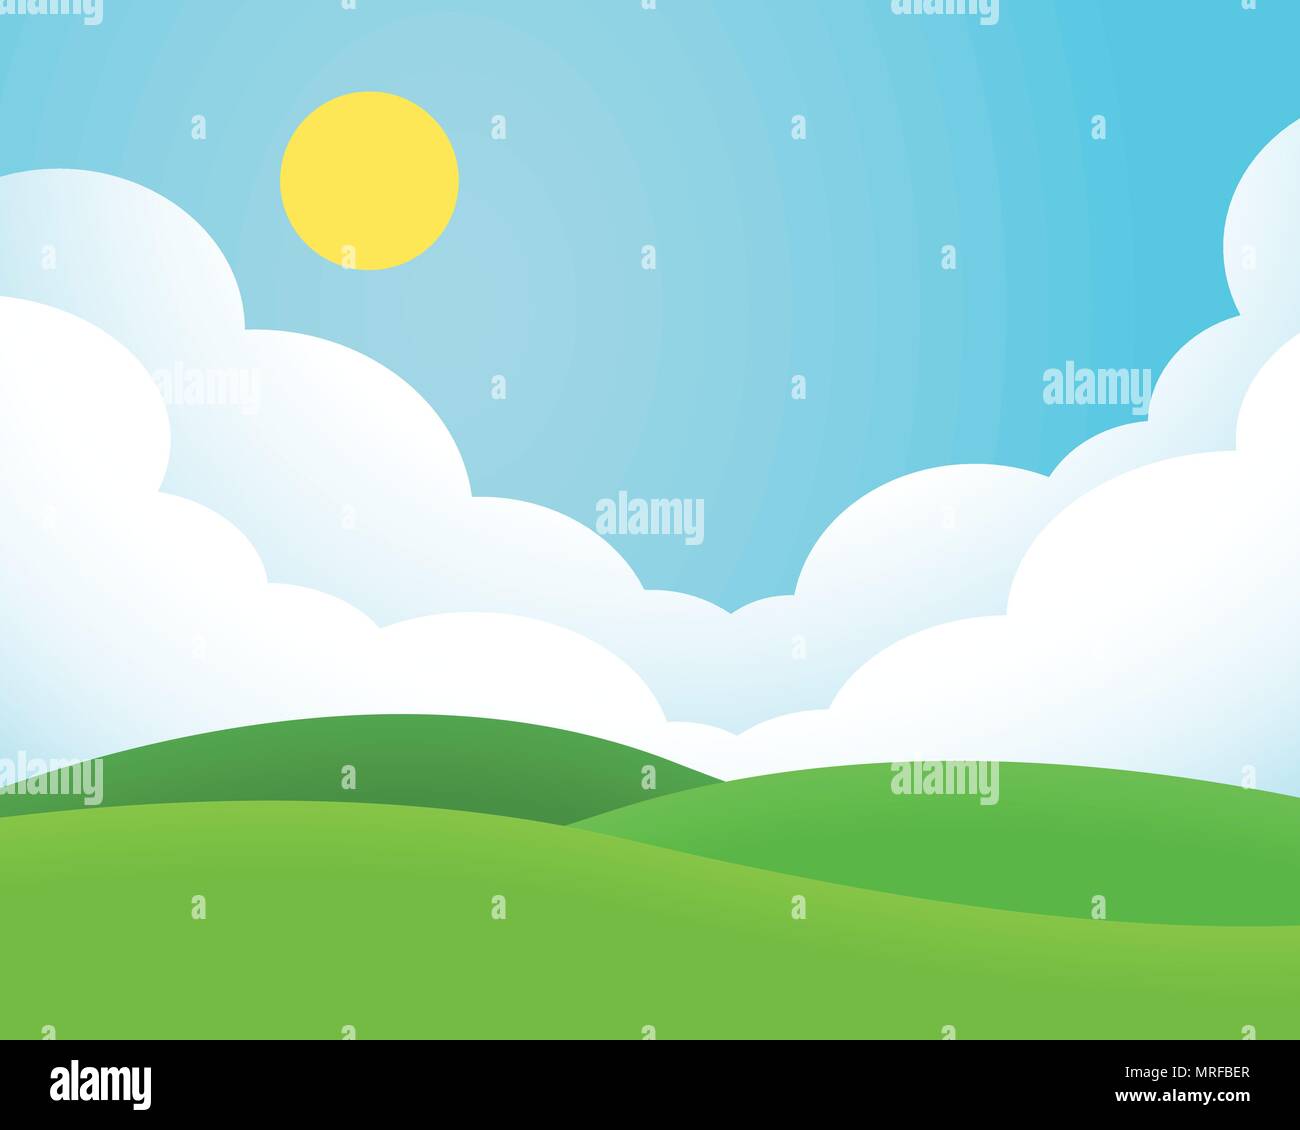 Flaches Design Abbildung: Landschaft mit Wiese und Hügel unter blauen Himmel mit Wolken und Sonne-Vektor Stock Vektor